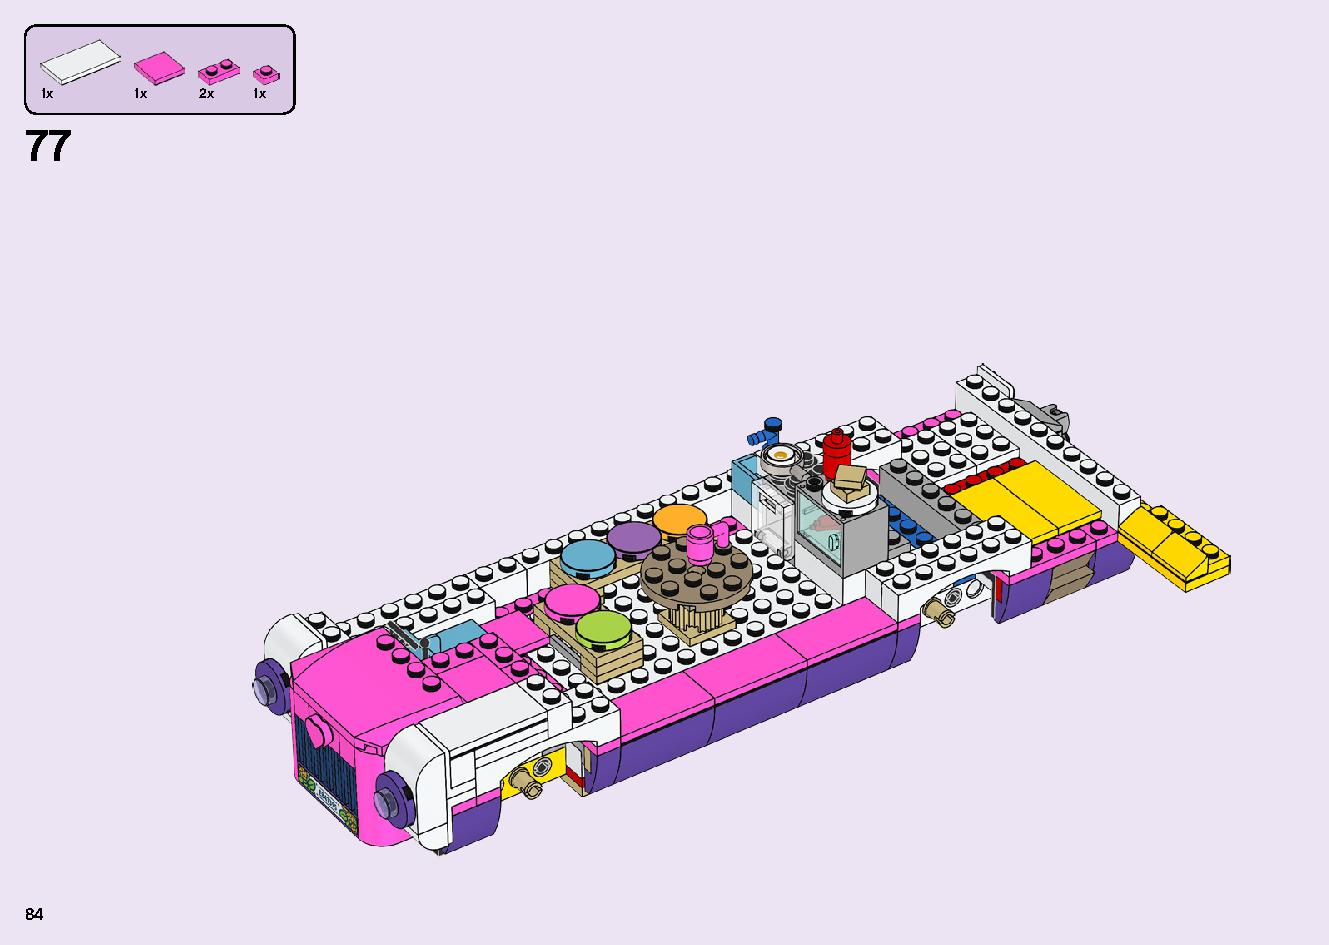 フレンズのうきうきハッピー・バス 41395 レゴの商品情報 レゴの説明書・組立方法 84 page